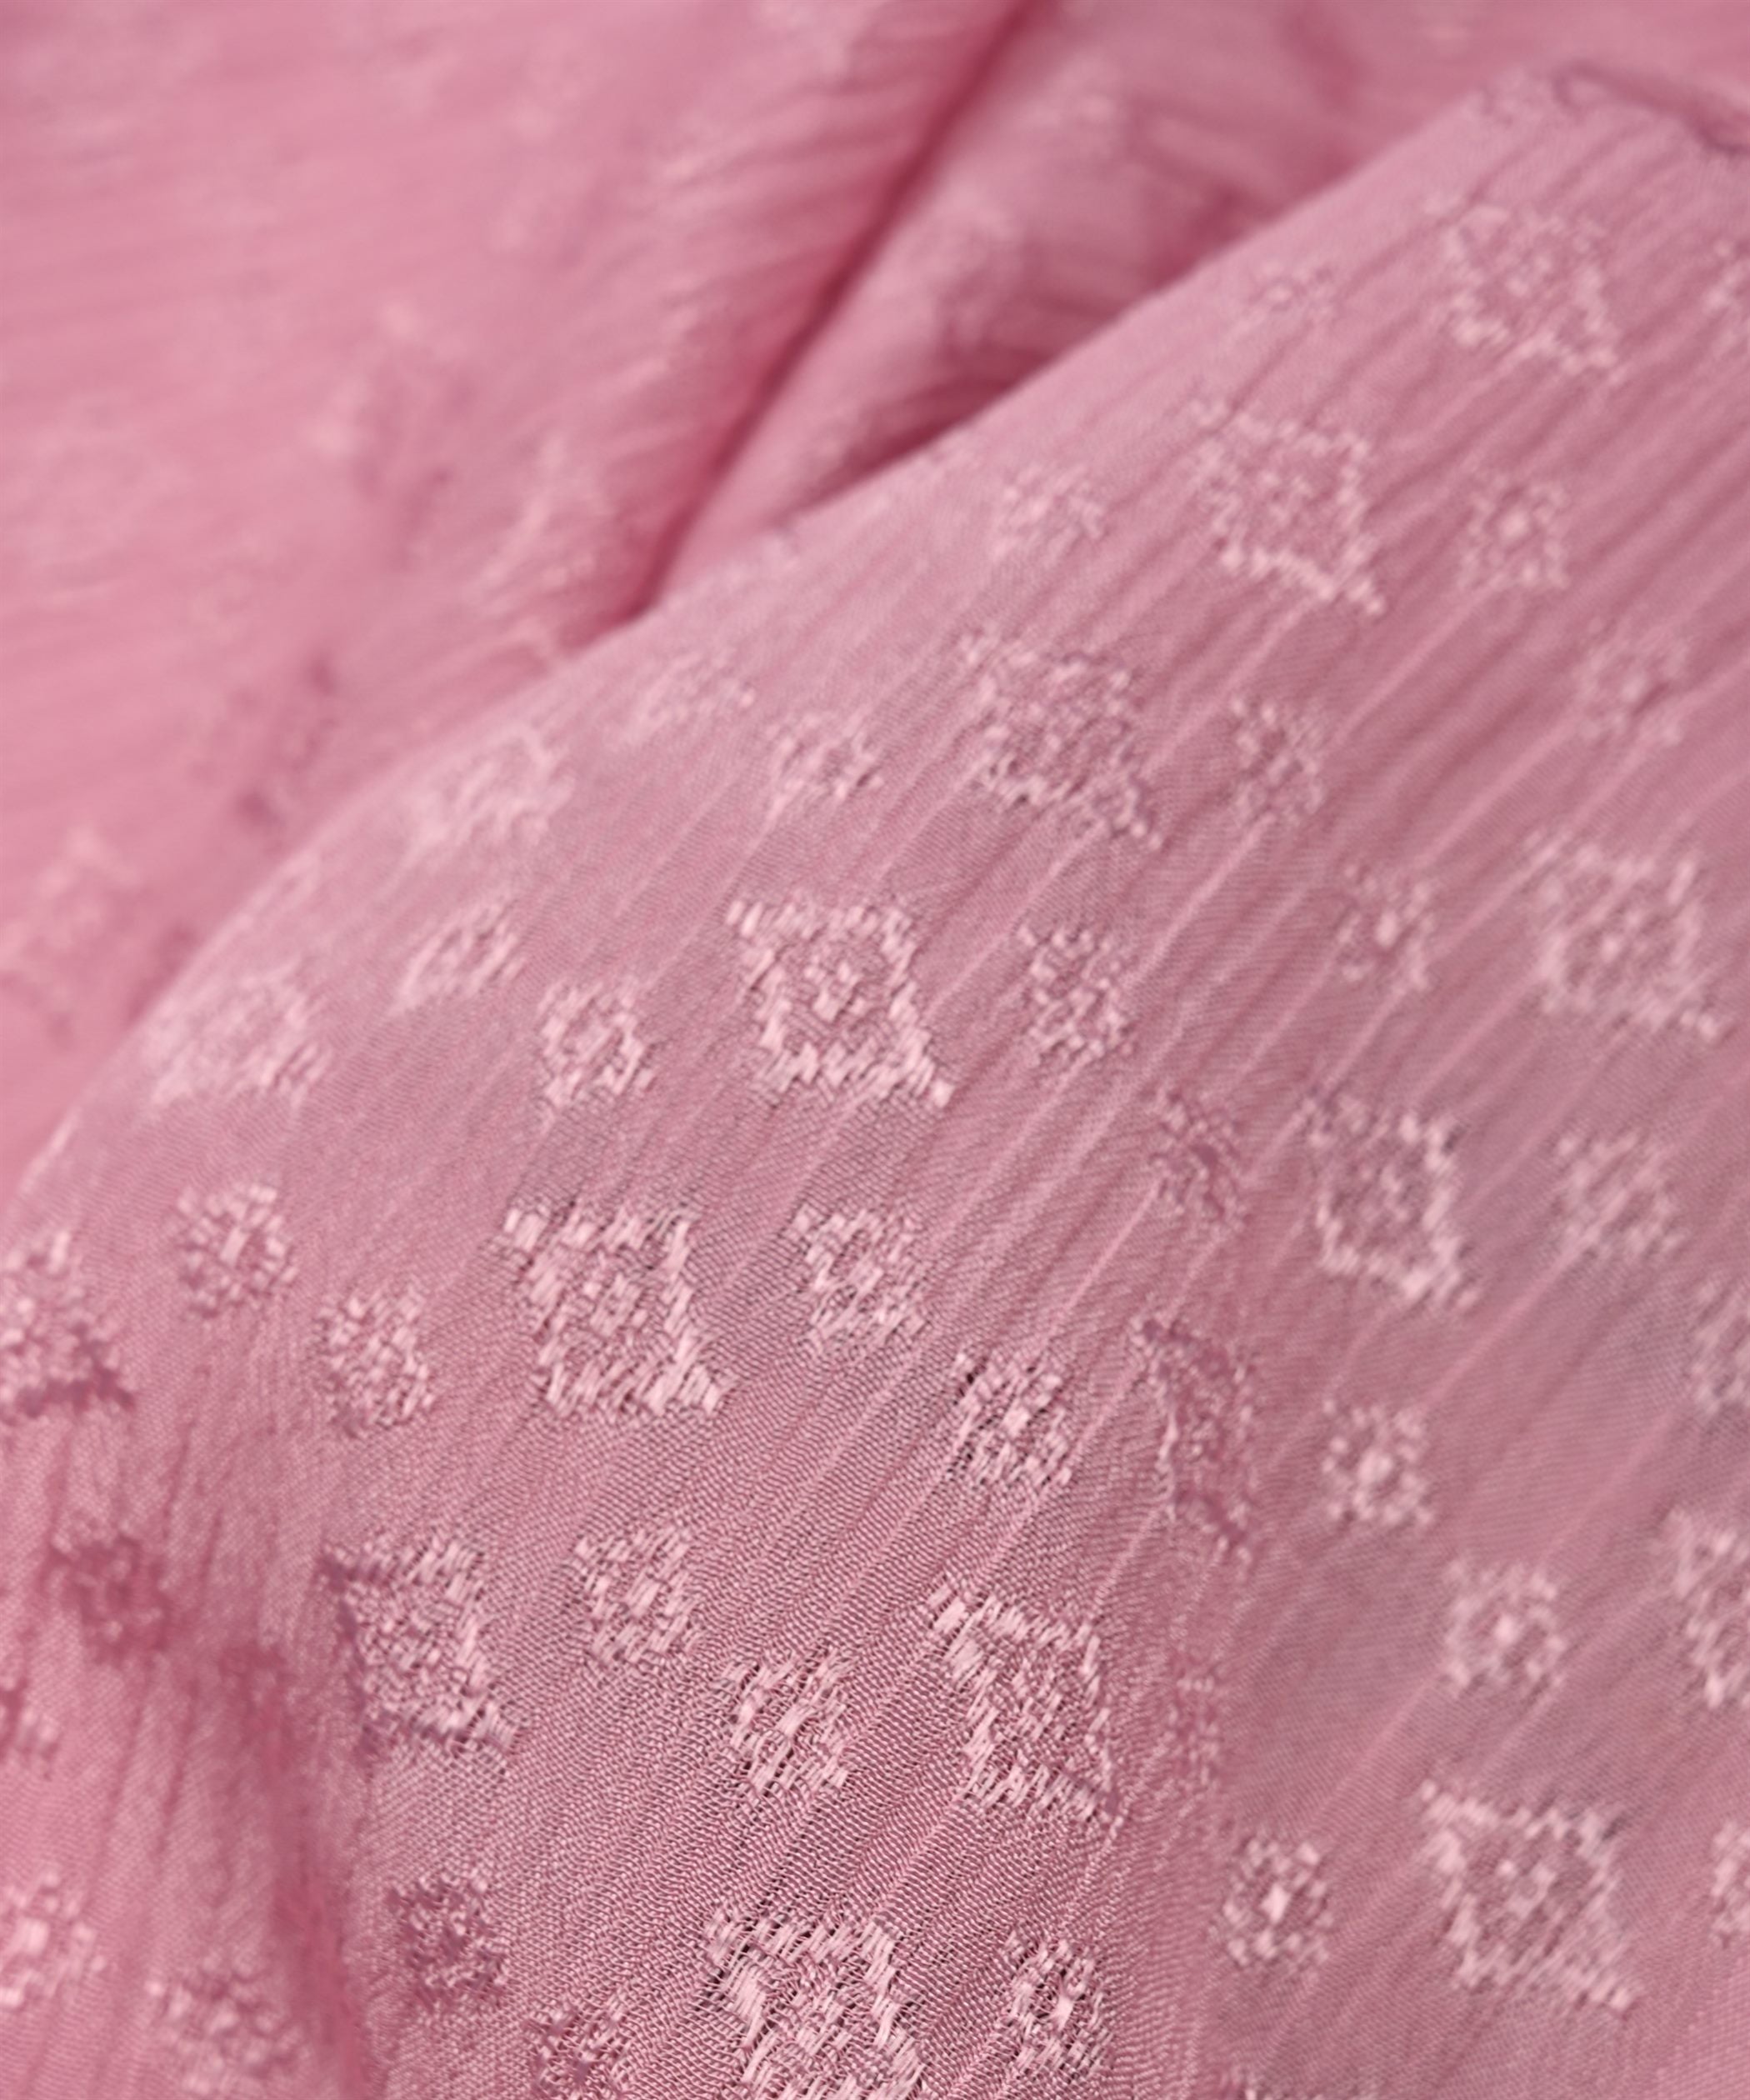 Pink Chinnon-Chiffon Fabric with jacquard-1